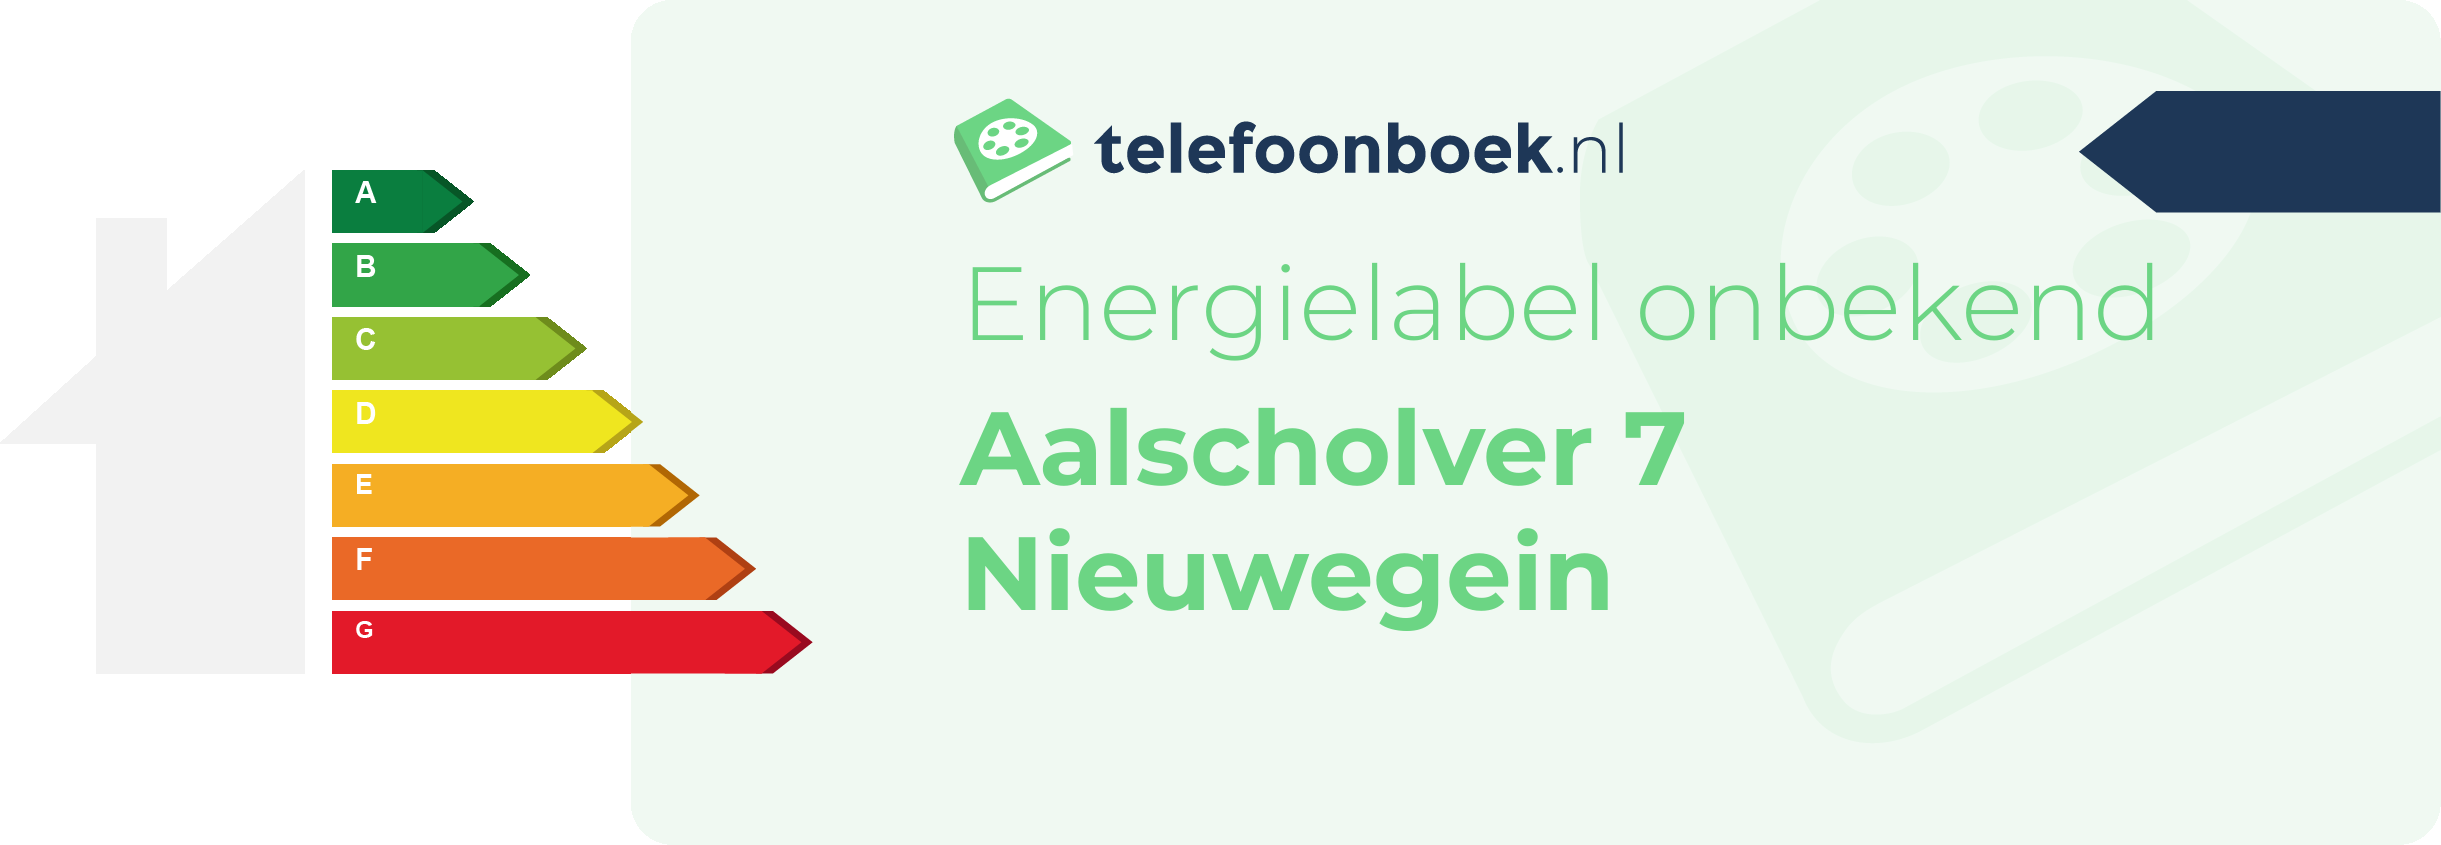 Energielabel Aalscholver 7 Nieuwegein